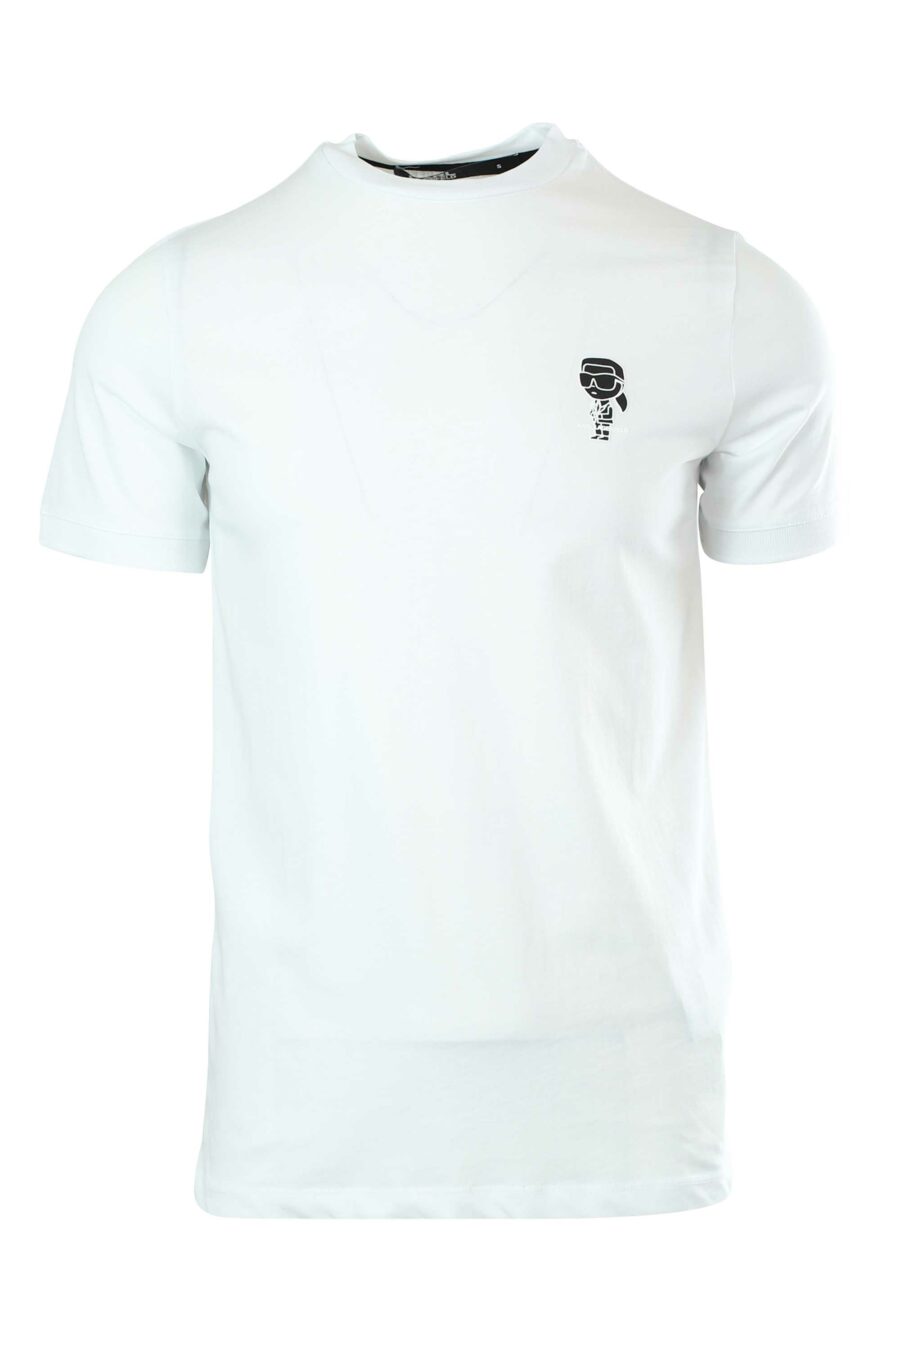 T-shirt branca com pequeno logótipo preto - 4062226282444